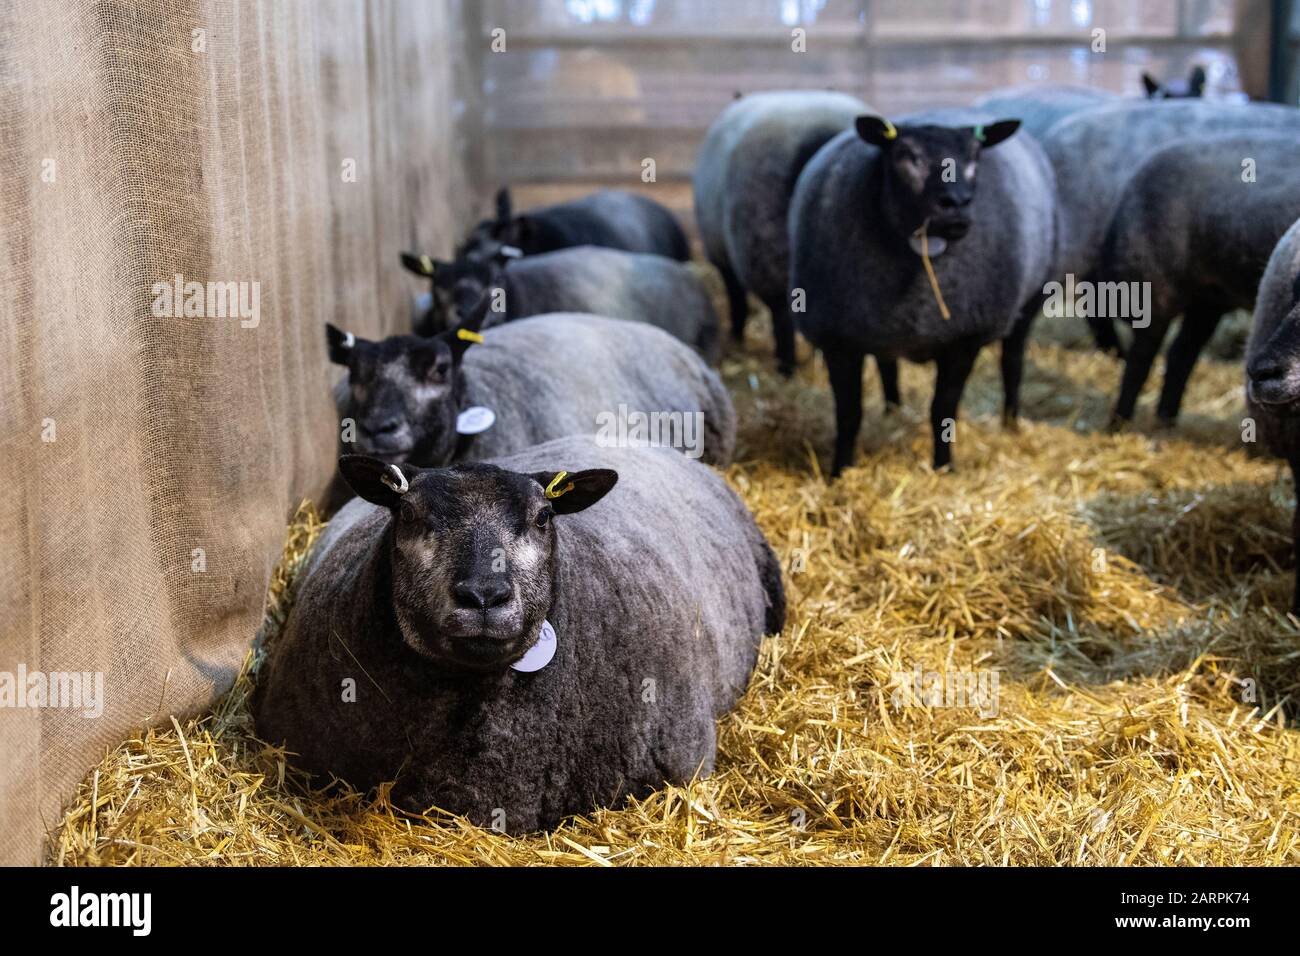 Le mouton Blue Texel était assis dans un stylo de paille à une vente. Cumbria, Royaume-Uni. Banque D'Images